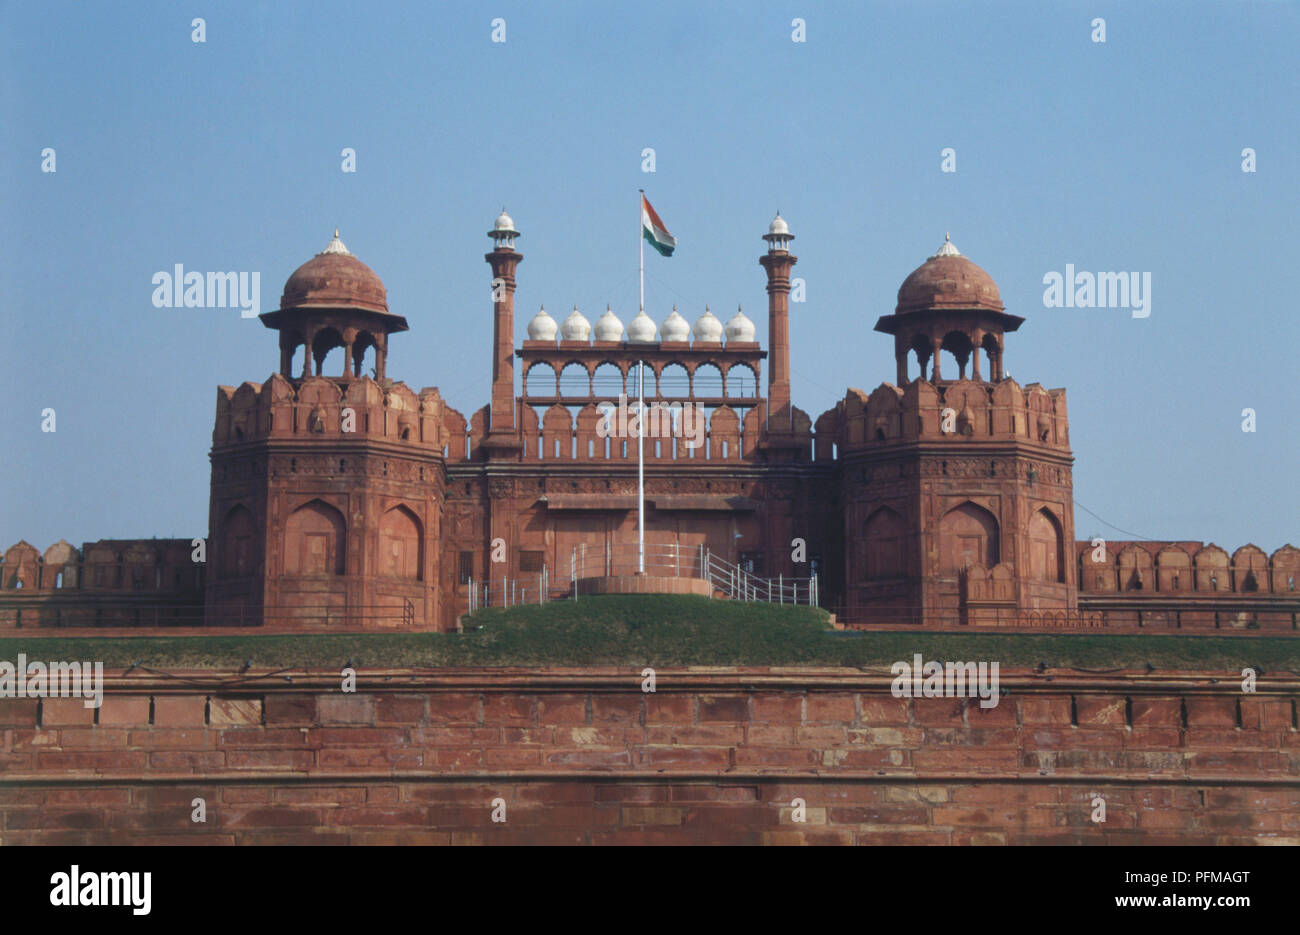 Indien, Delhi, Chandni Chowk, imposante Lahore Tor, Eingang des Roten Forts, roter Sandstein mit weißem Marmor Garnituren, twin Burj als Wachtürme, Fliegen im Zentrum. Stockfoto